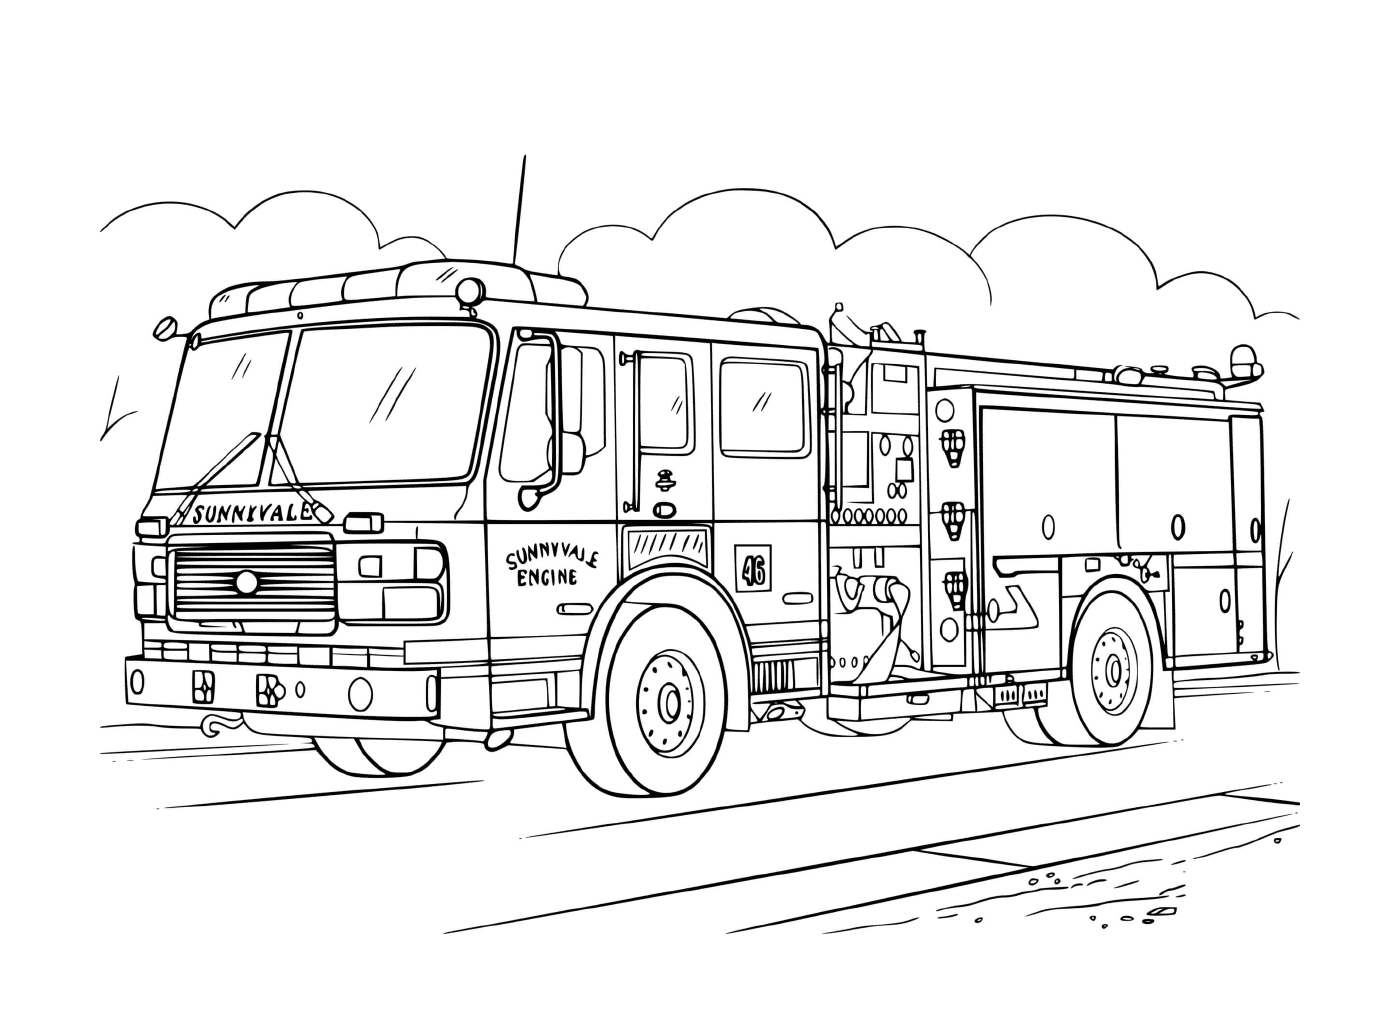  Dibujo de un camión de bomberos realista 